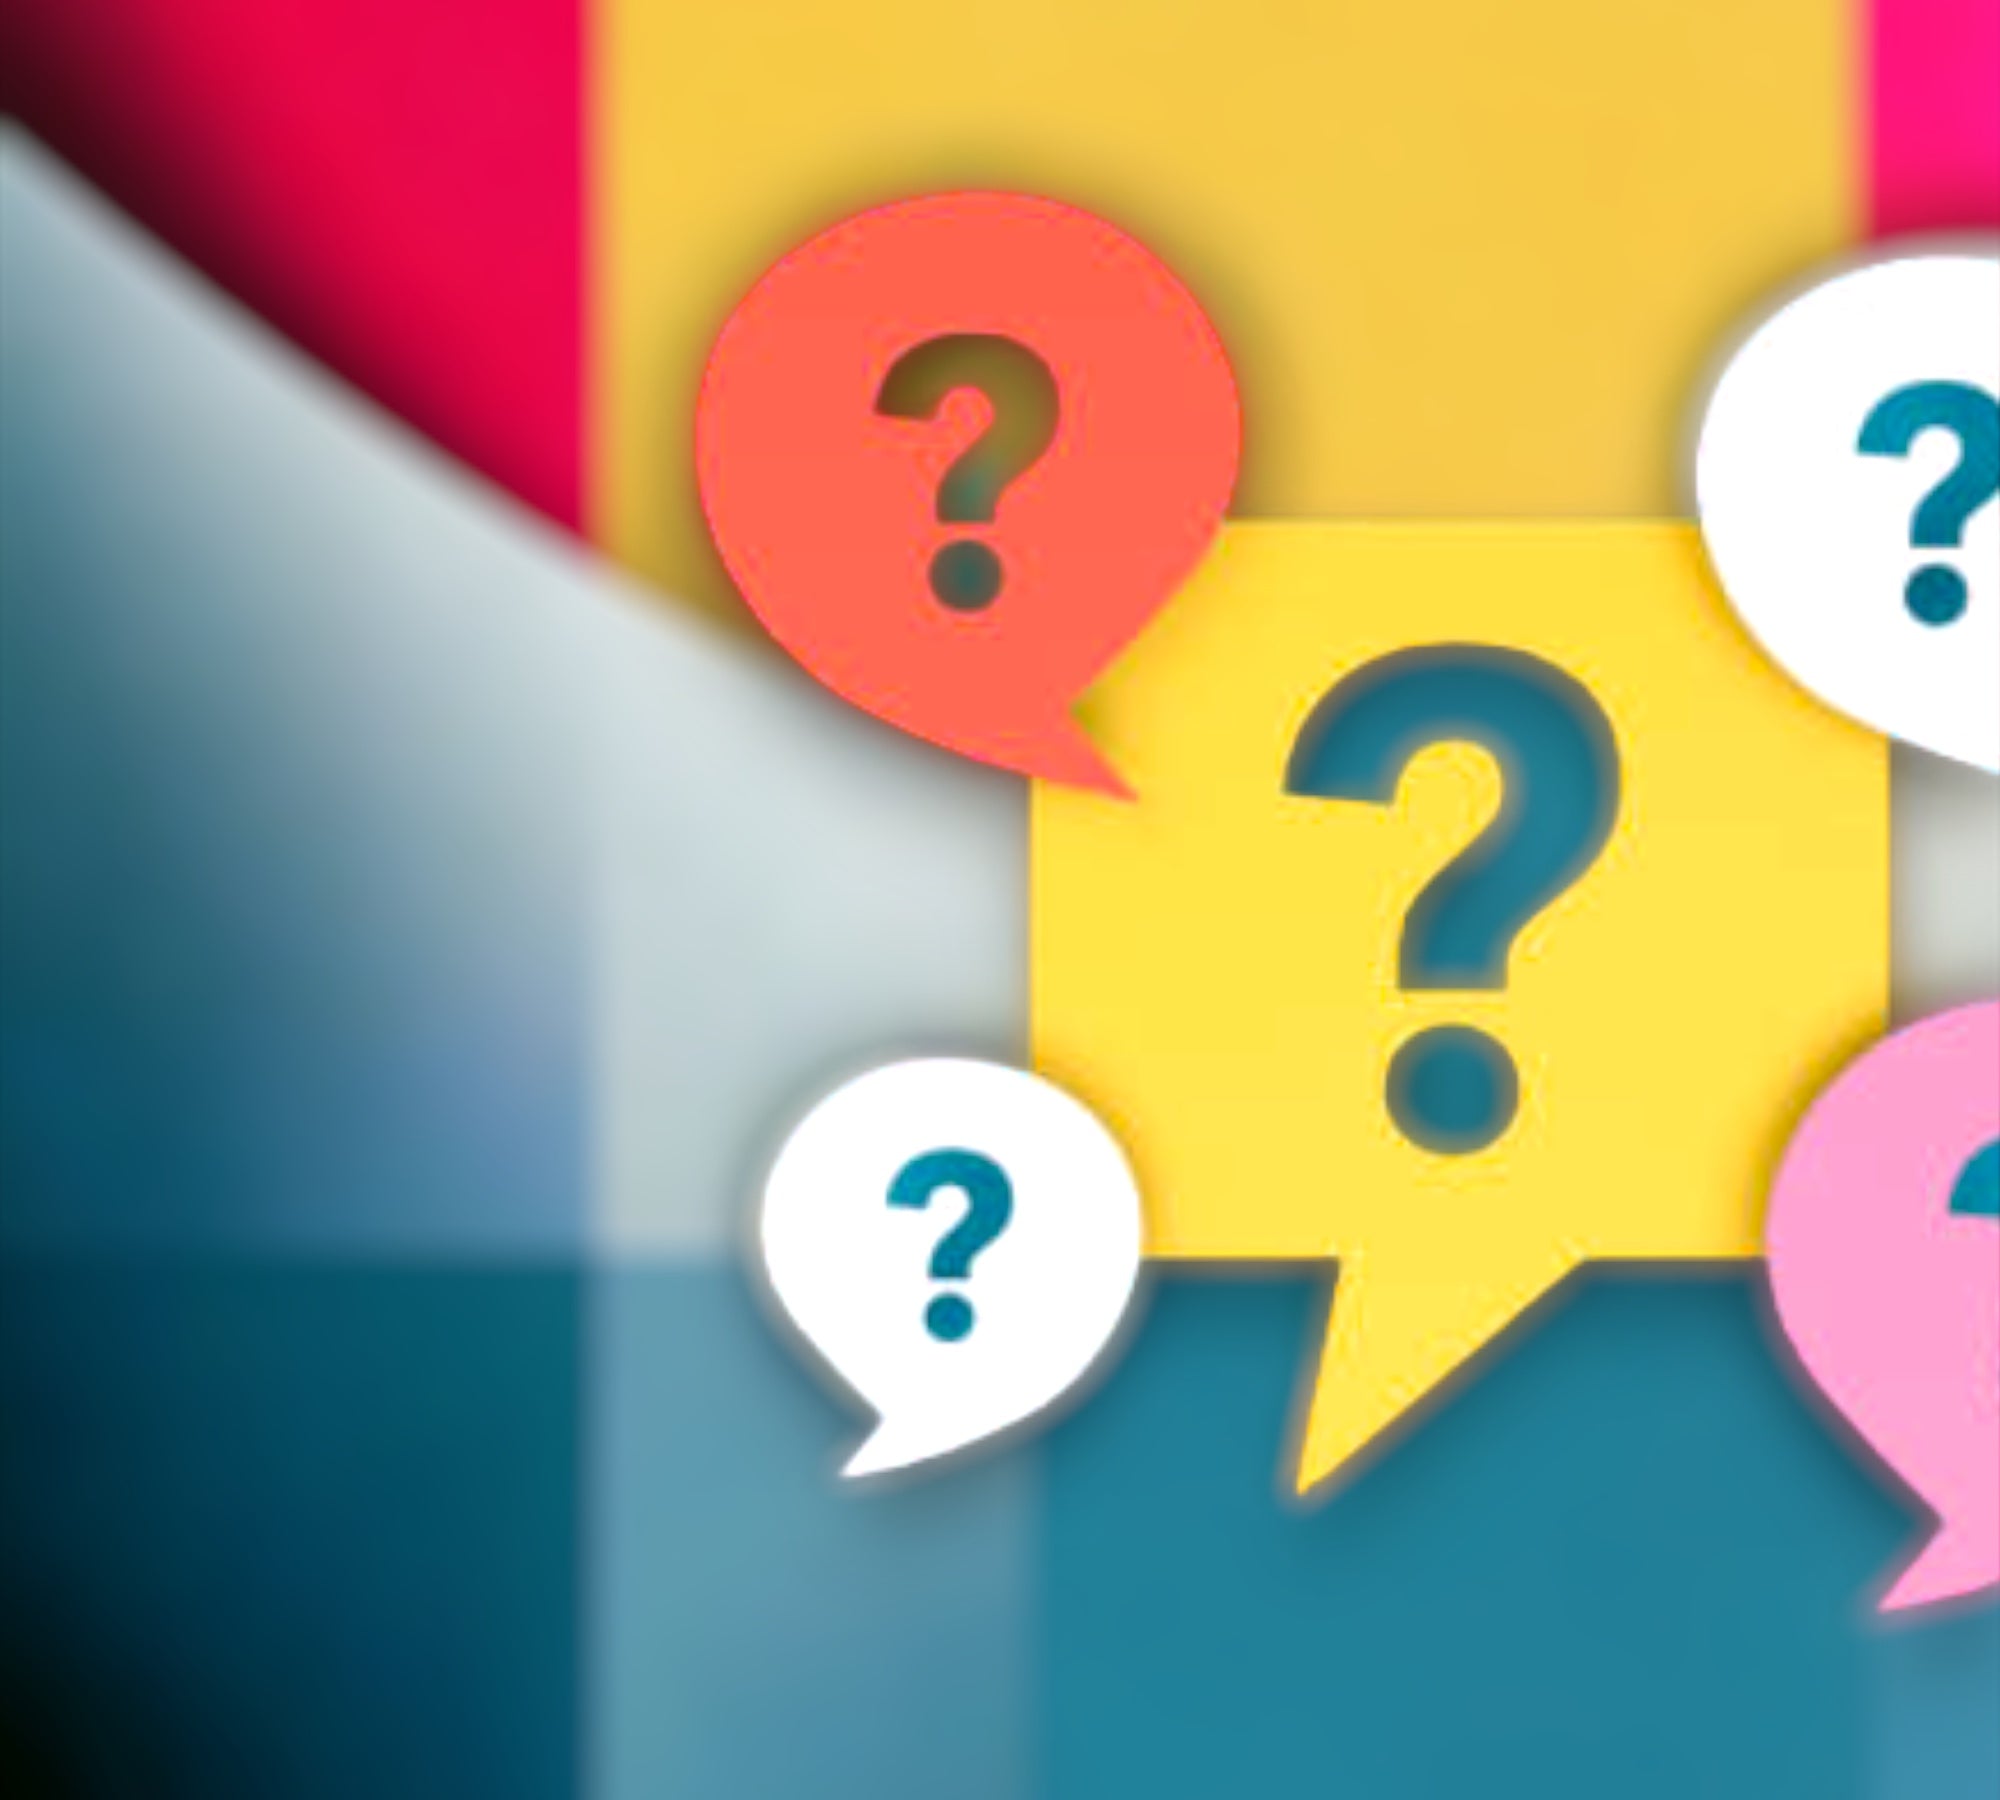 Buntes Bild mit stilisierten Fragen- und Ausrufezeichen, dient als Vorschaubild für das FAQ von ETH Meditec. Ansprechend gestaltet, lädt zur Erkundung und Beantwortung von häufig gestellten Fragen ein.